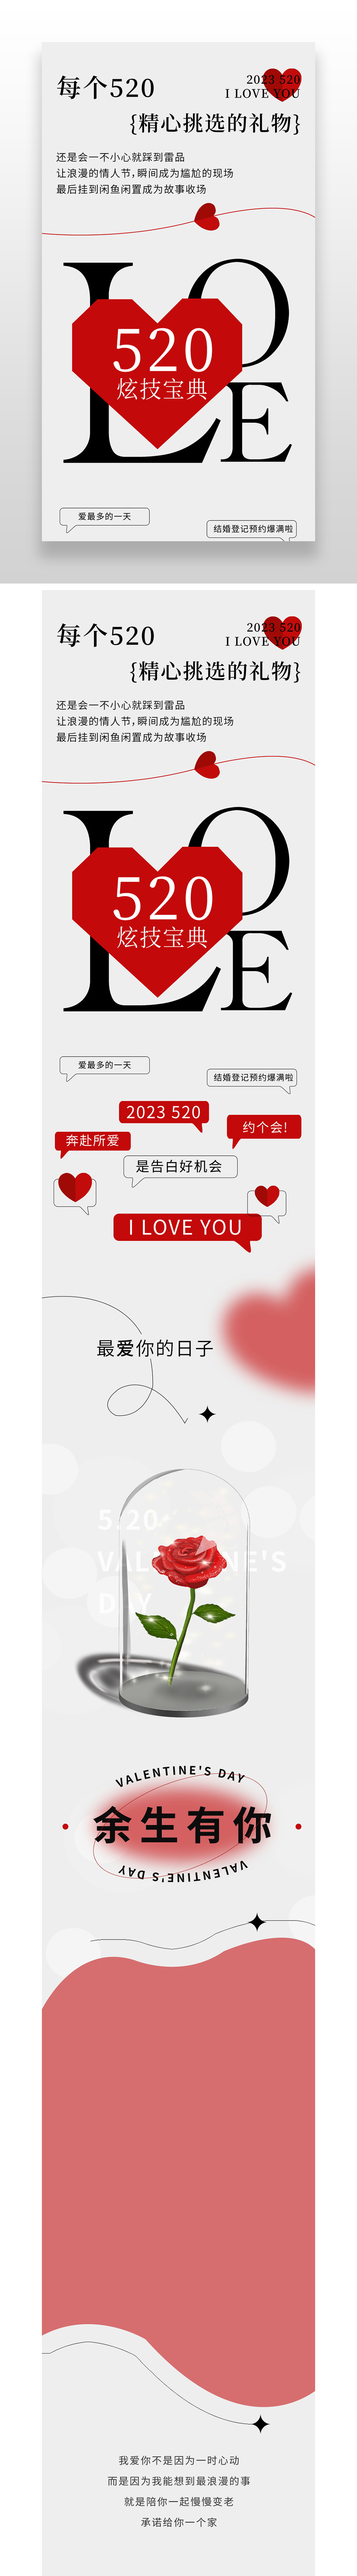 红色简约520精心挑选的礼物520情人节促销长图.JPG